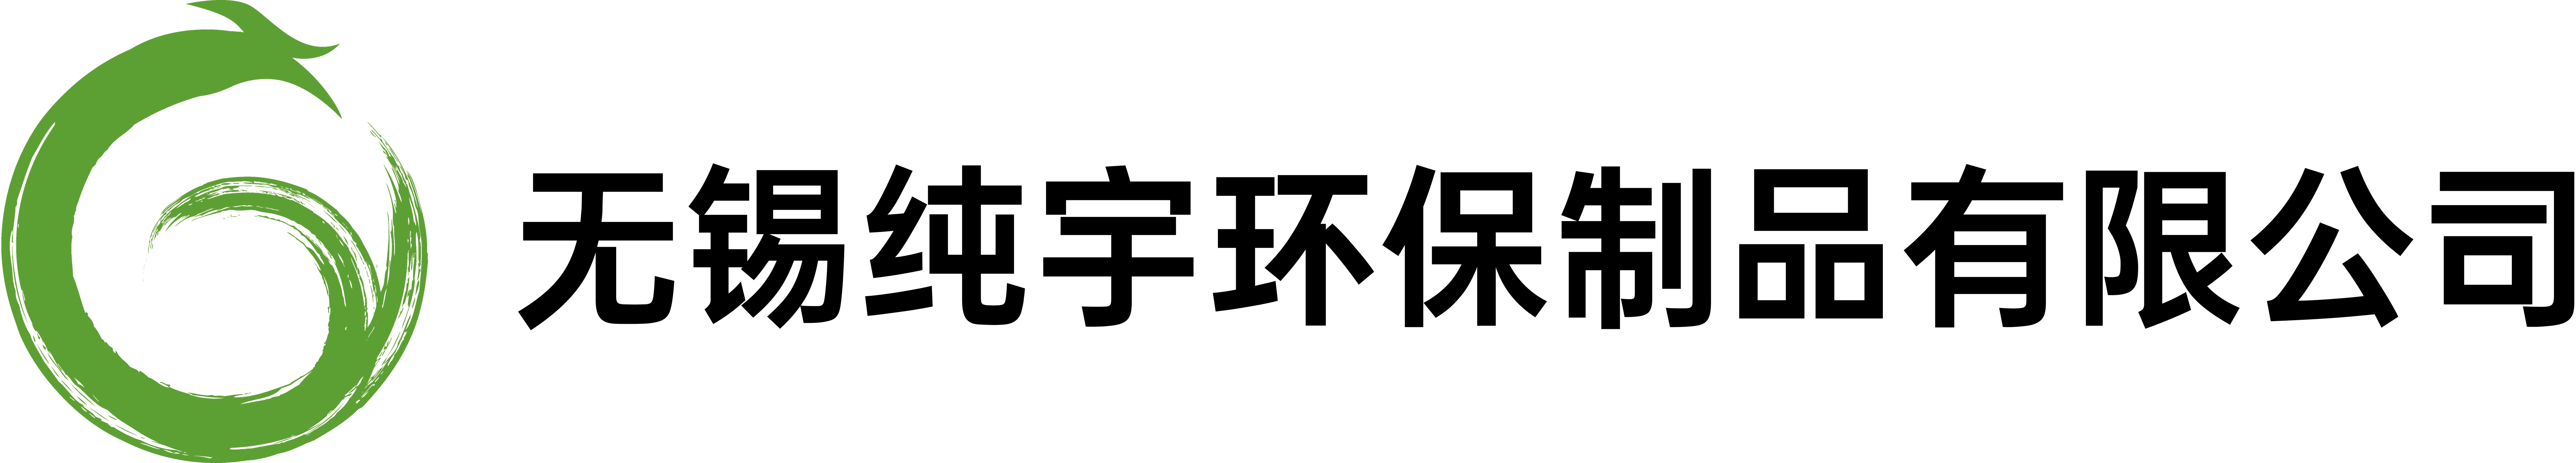 无锡纯宇环保制品有限公司 logo